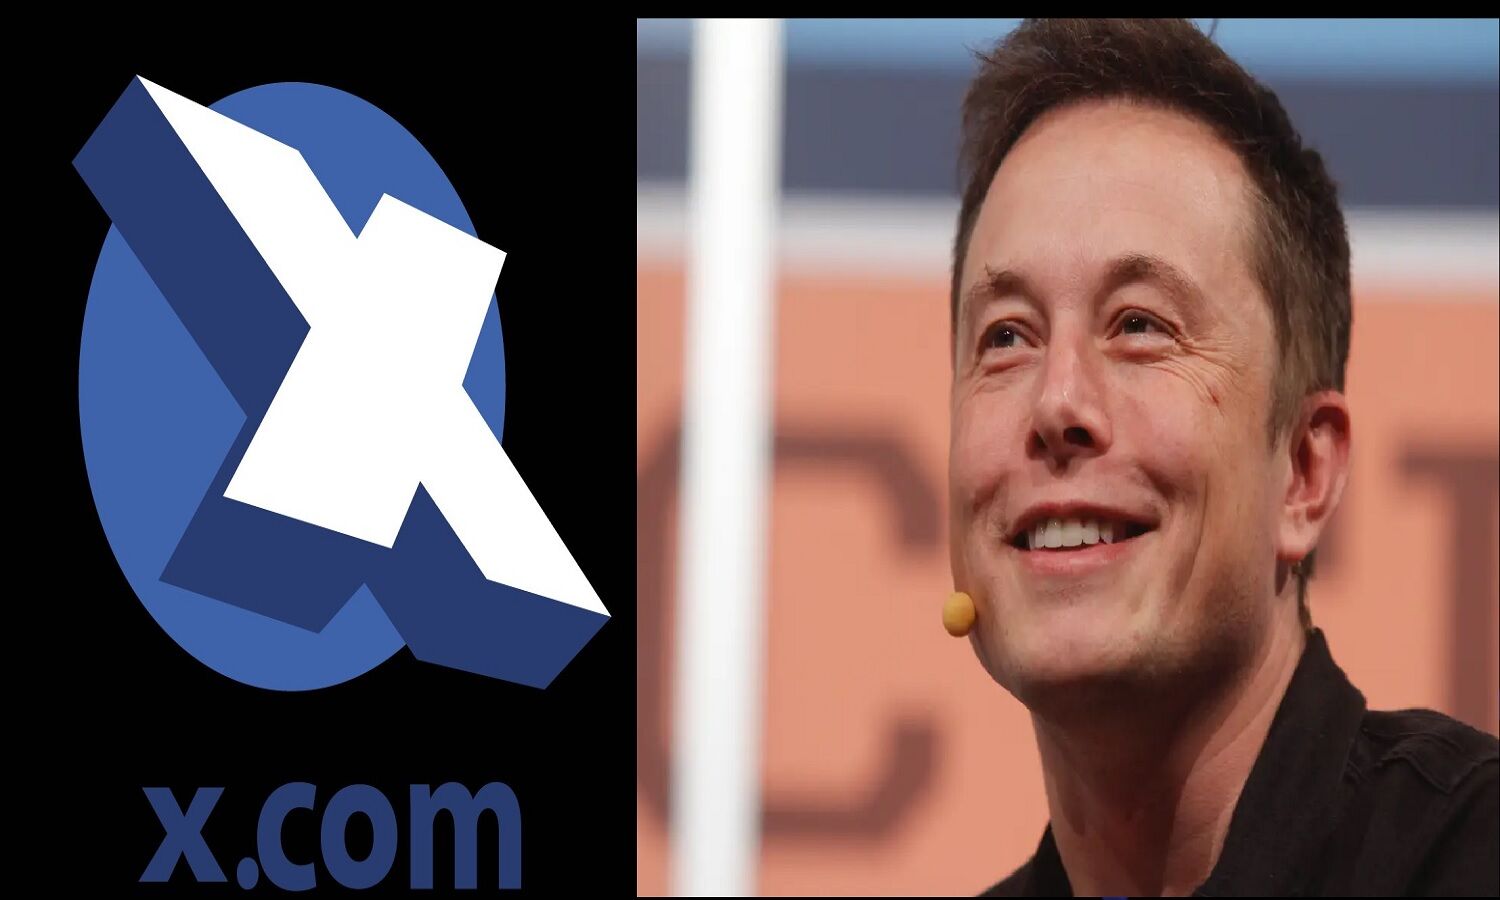 X.com लाकर Elon Musk खुद की सोशल मीडिया  कंपनी शुरू करने वाले हैं! Twitter Deal का क्या होगा?